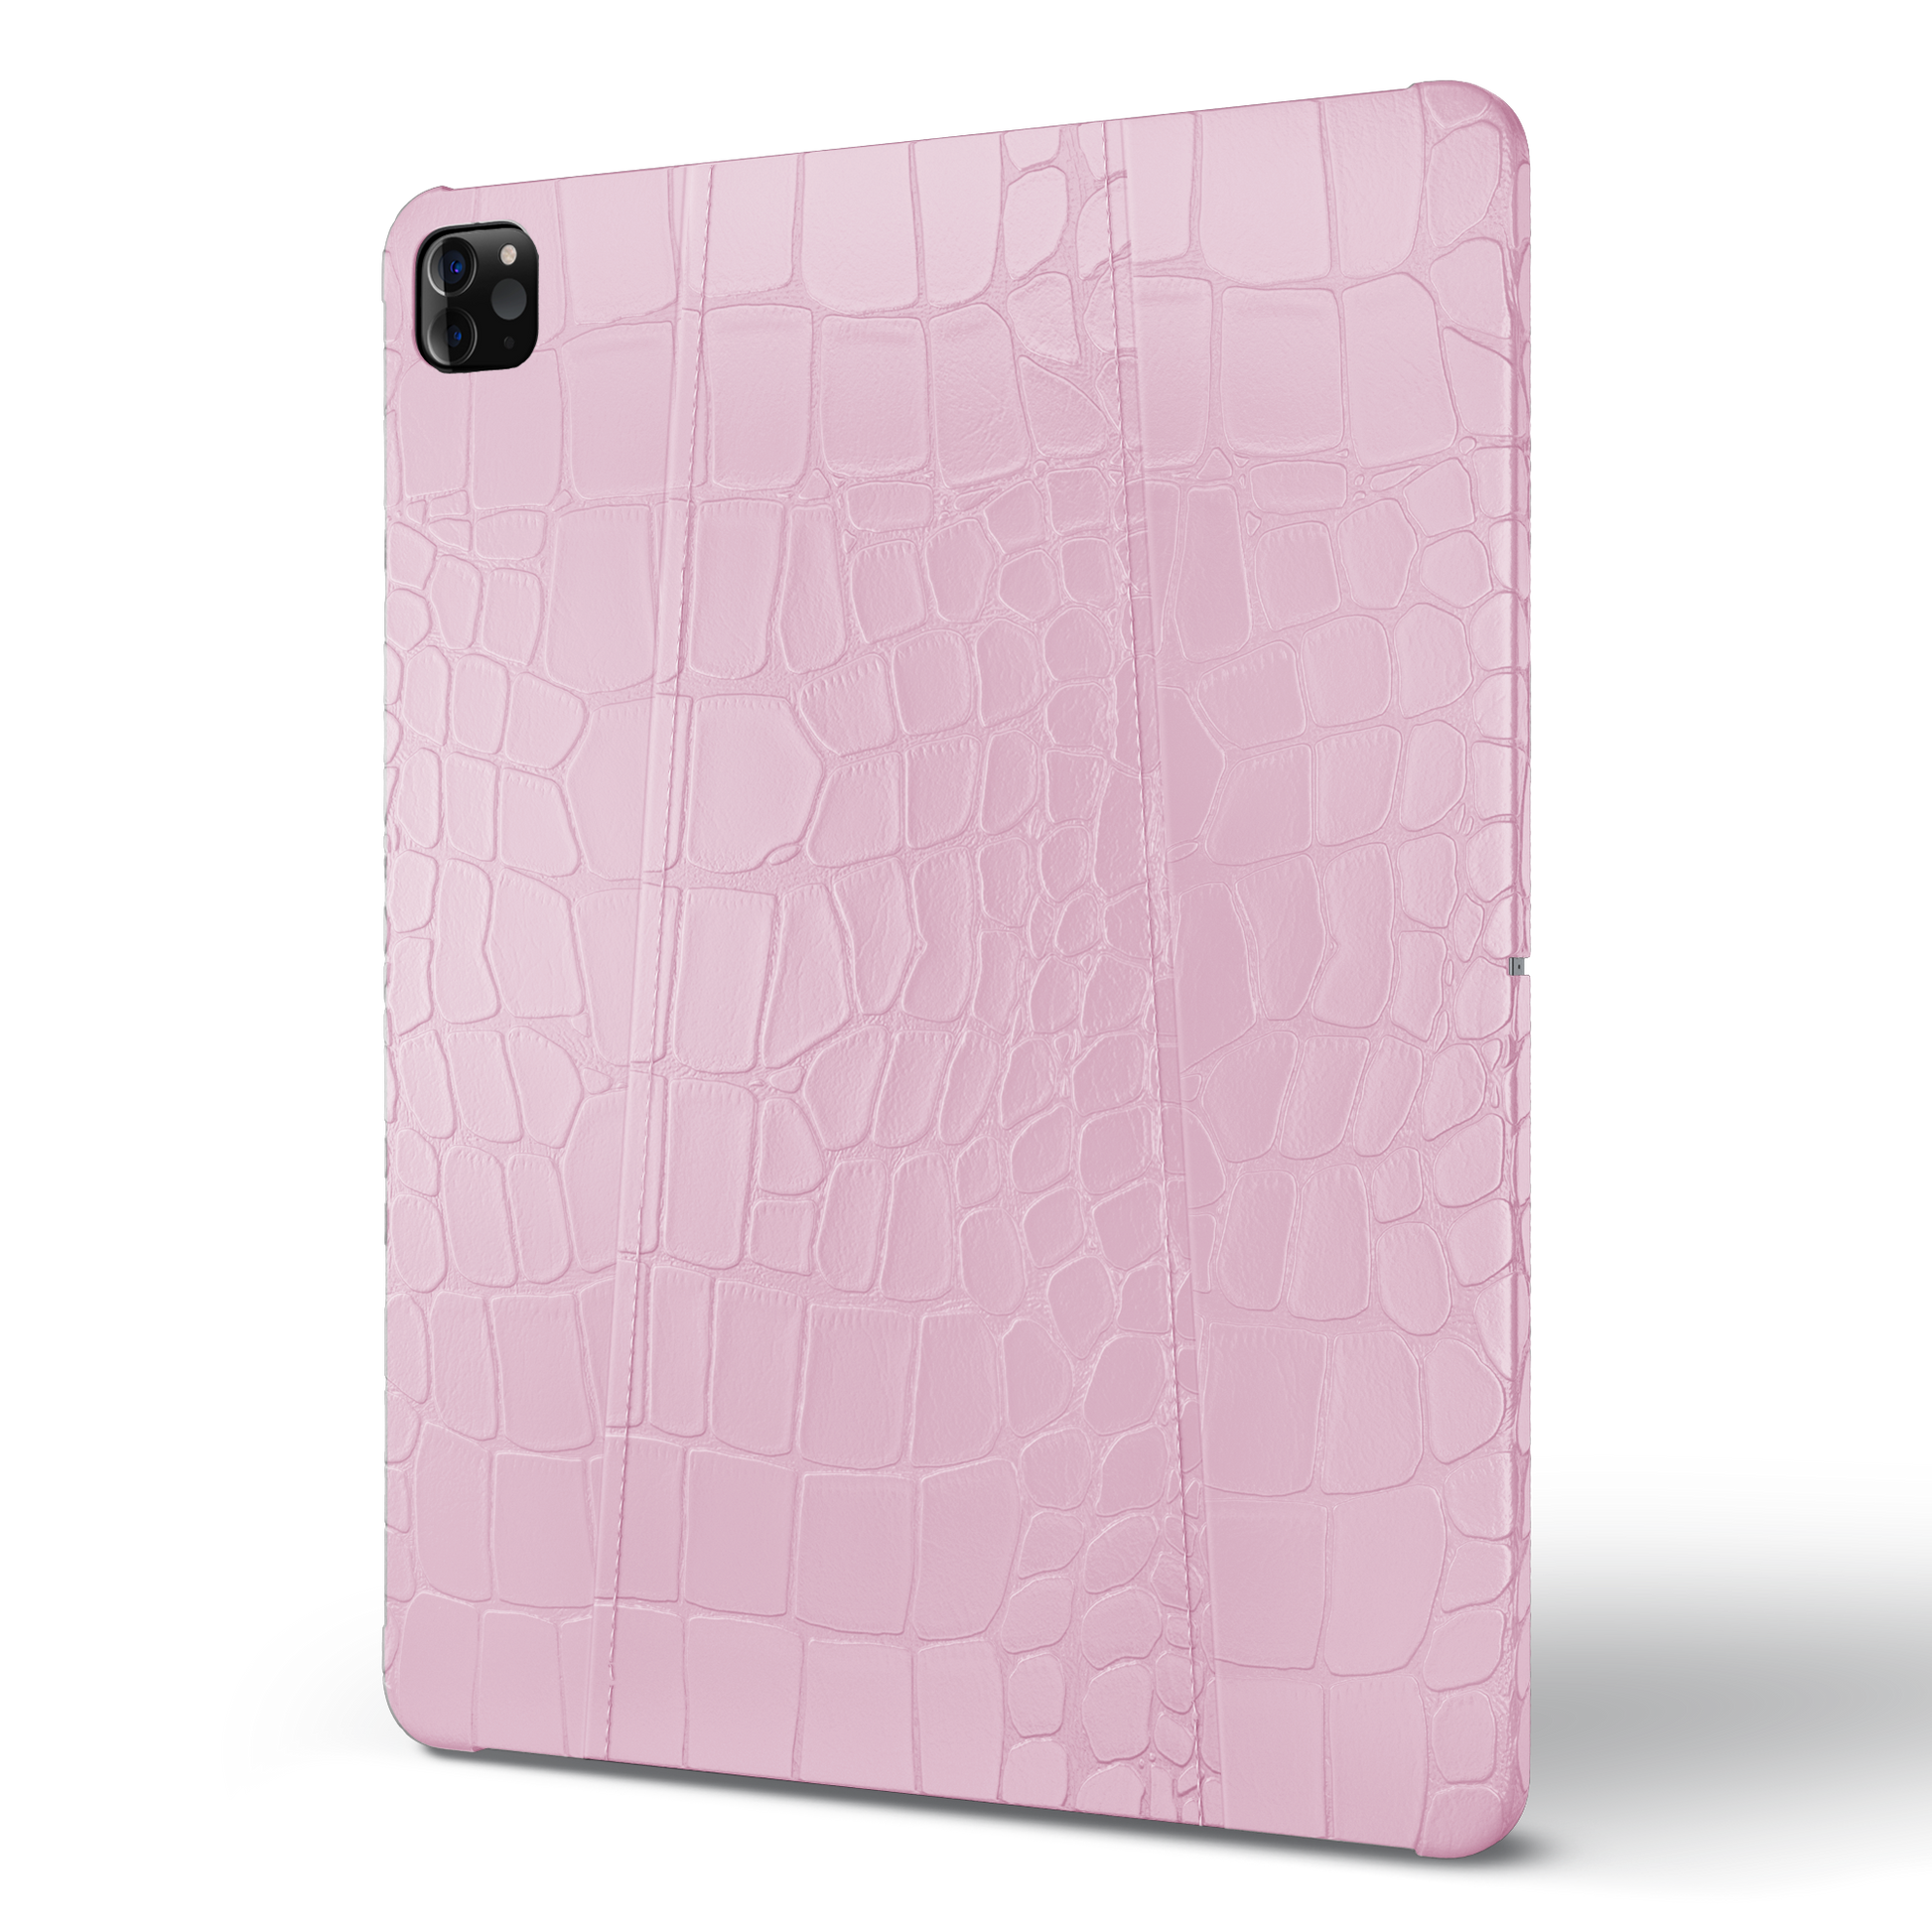 Ipad Pro (6th Gen) 12.9-inch Pink Alligator Case